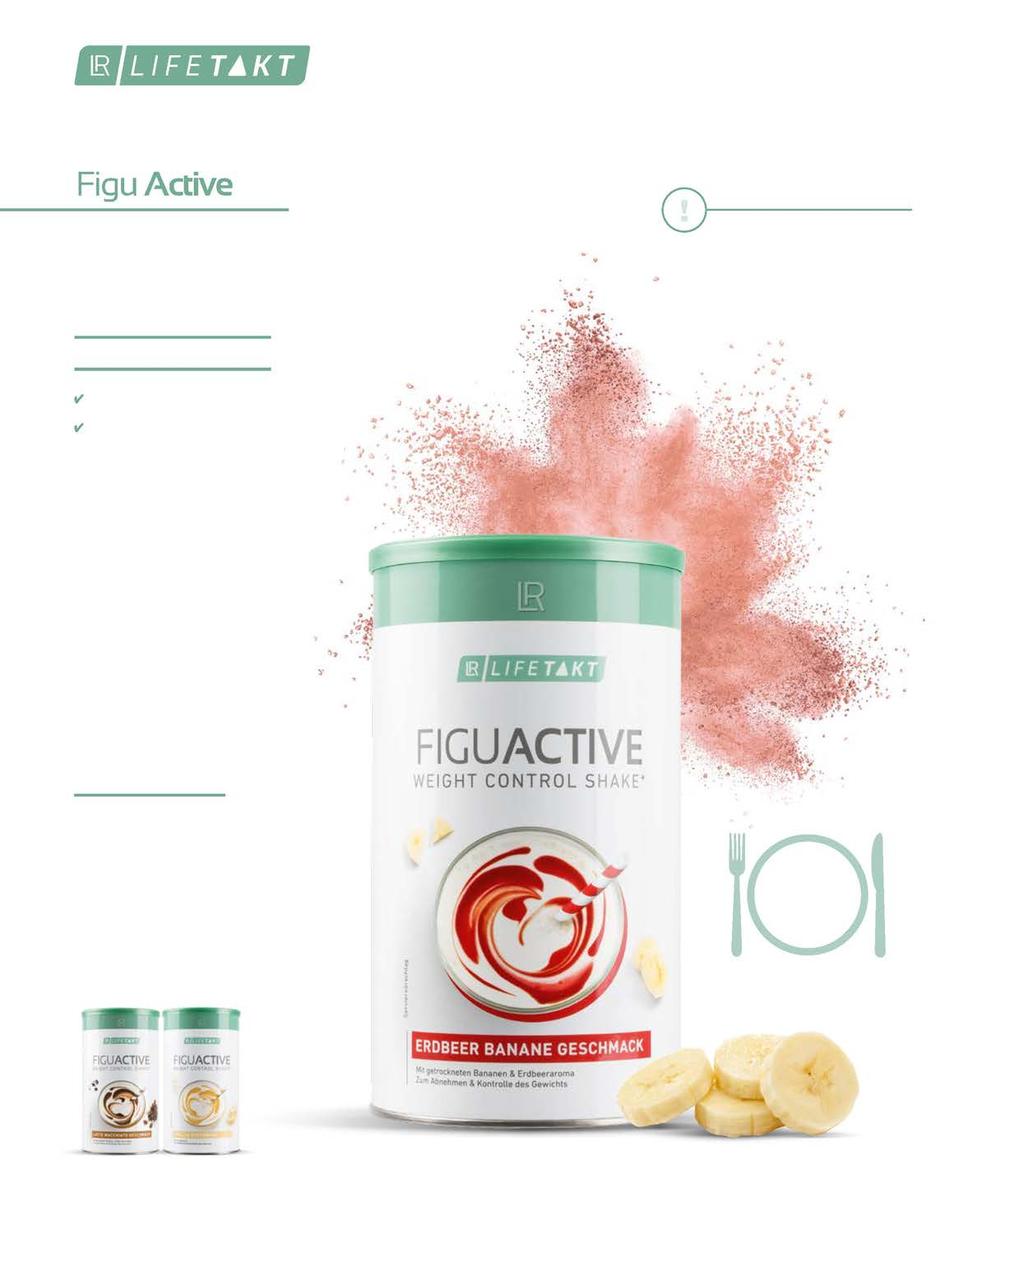 60 De romige Figu Activeproducten zijn snel en eenvoudig te bereiden. Deze lekkere maaltijdvervanger is verkrijgbaar in tal van smaakcombinaties.